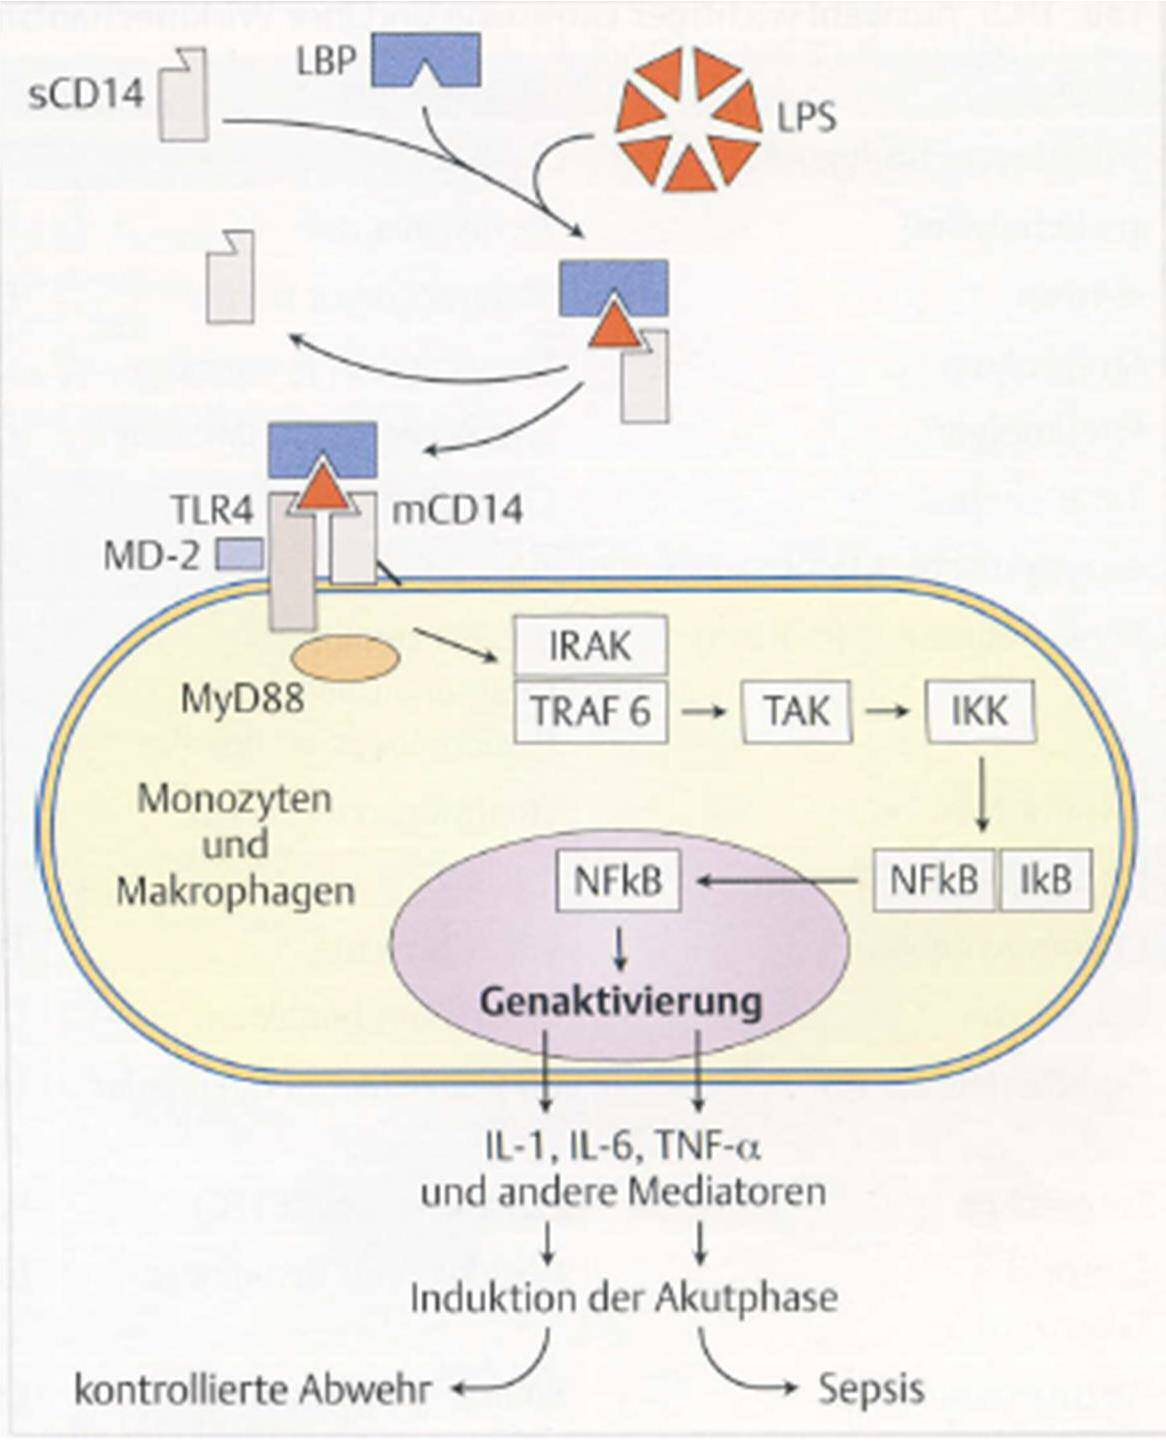 LPS bilden mit LBP Komplex, Bindung an scd14 scd14 dirigiert LPS zu Proteinkomplex auf Oberfläche des Makrophagen (TLR 4, MD-2, mcd14) Signaltransduktionskaskade, Eintritt des